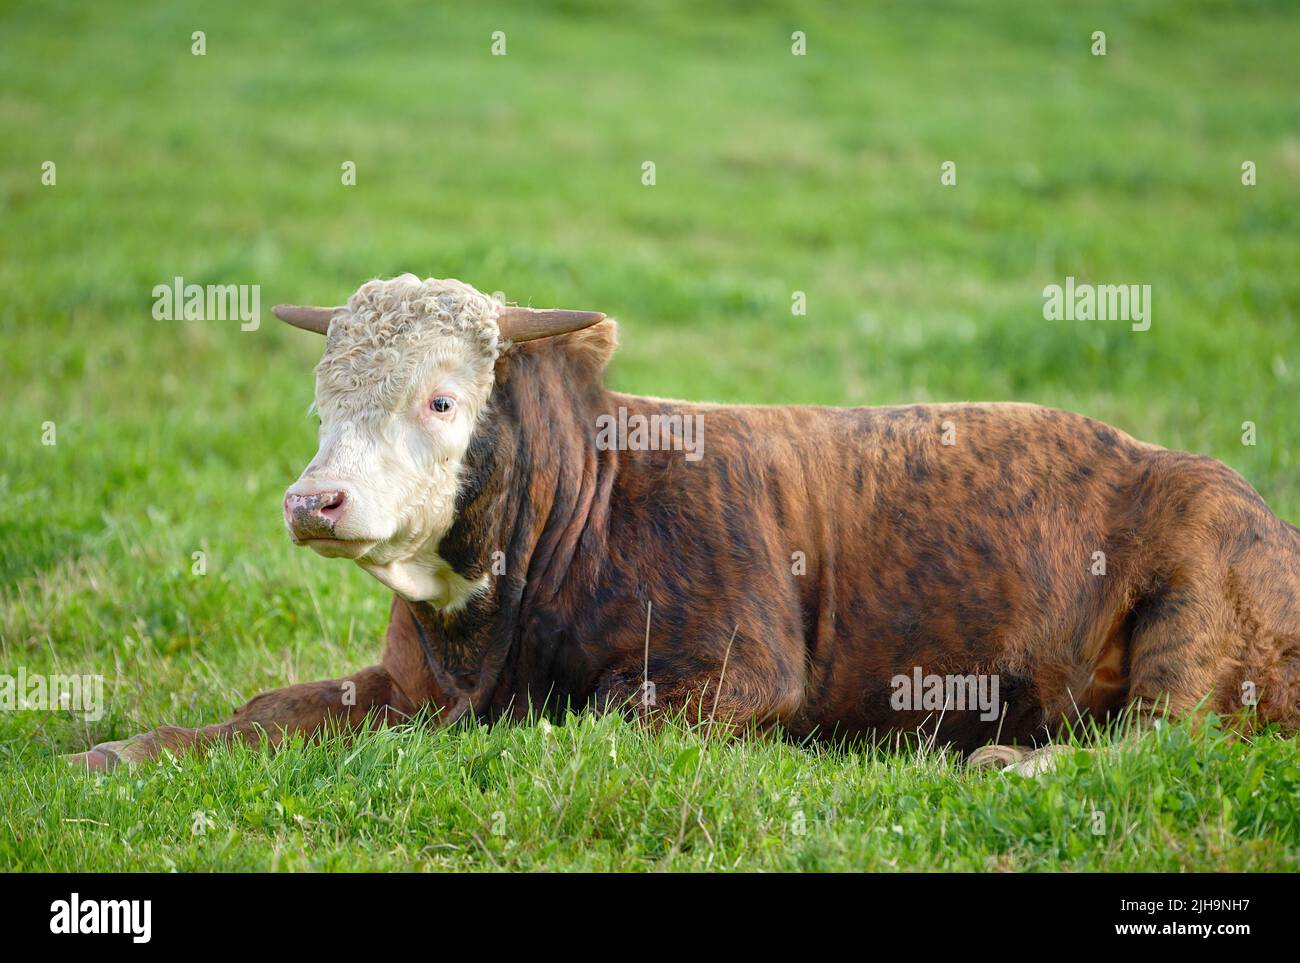 Paysage avec animaux dans la nature. Une vache brune et blanche assise sur un terrain vert dans une campagne rurale avec espace de copie. Élevage et élevage Banque D'Images